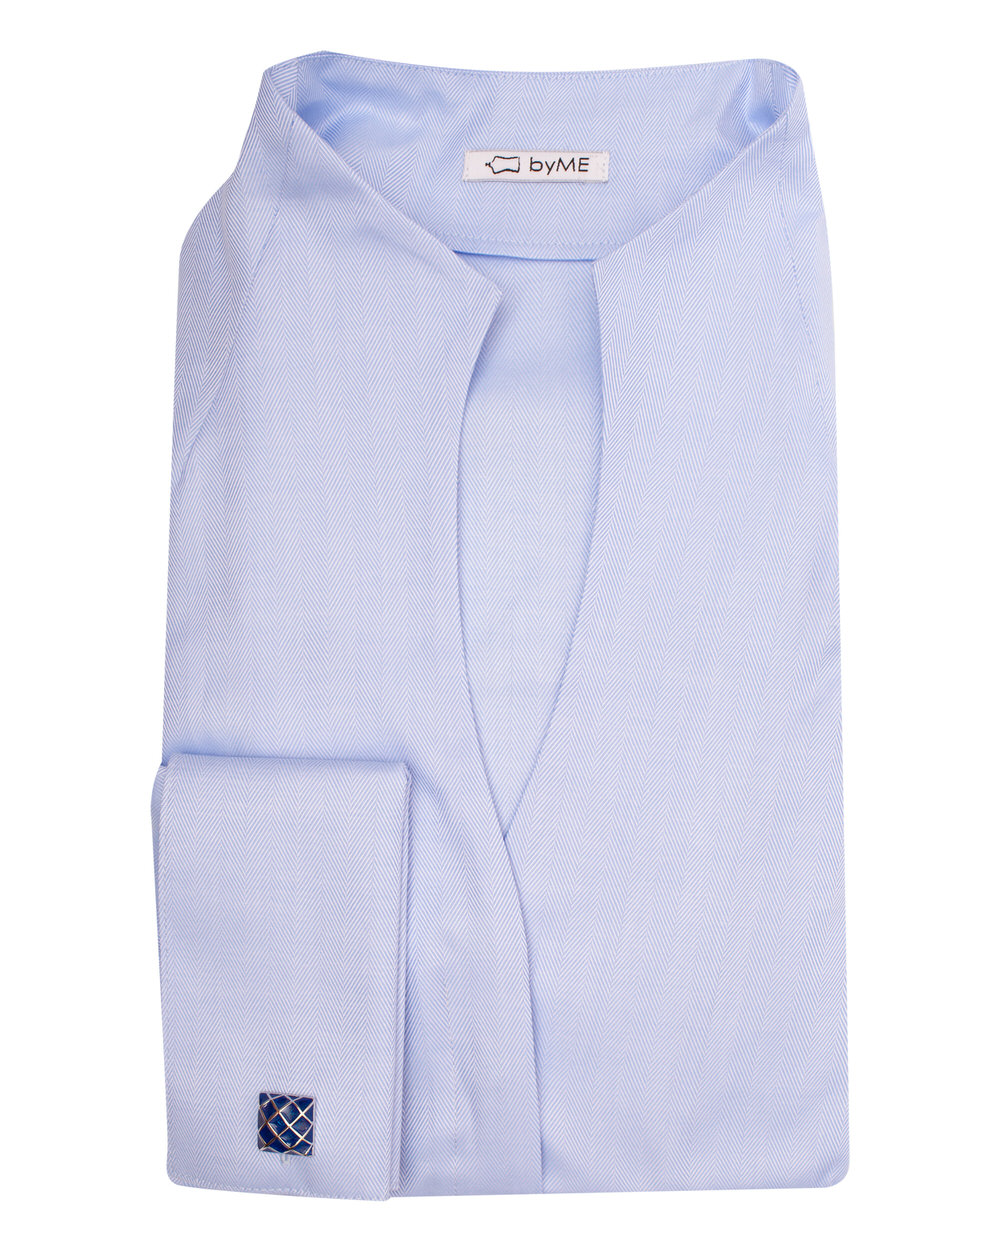 Женская рубашка воротник стойка под запонку голубая - 8124 от byME 